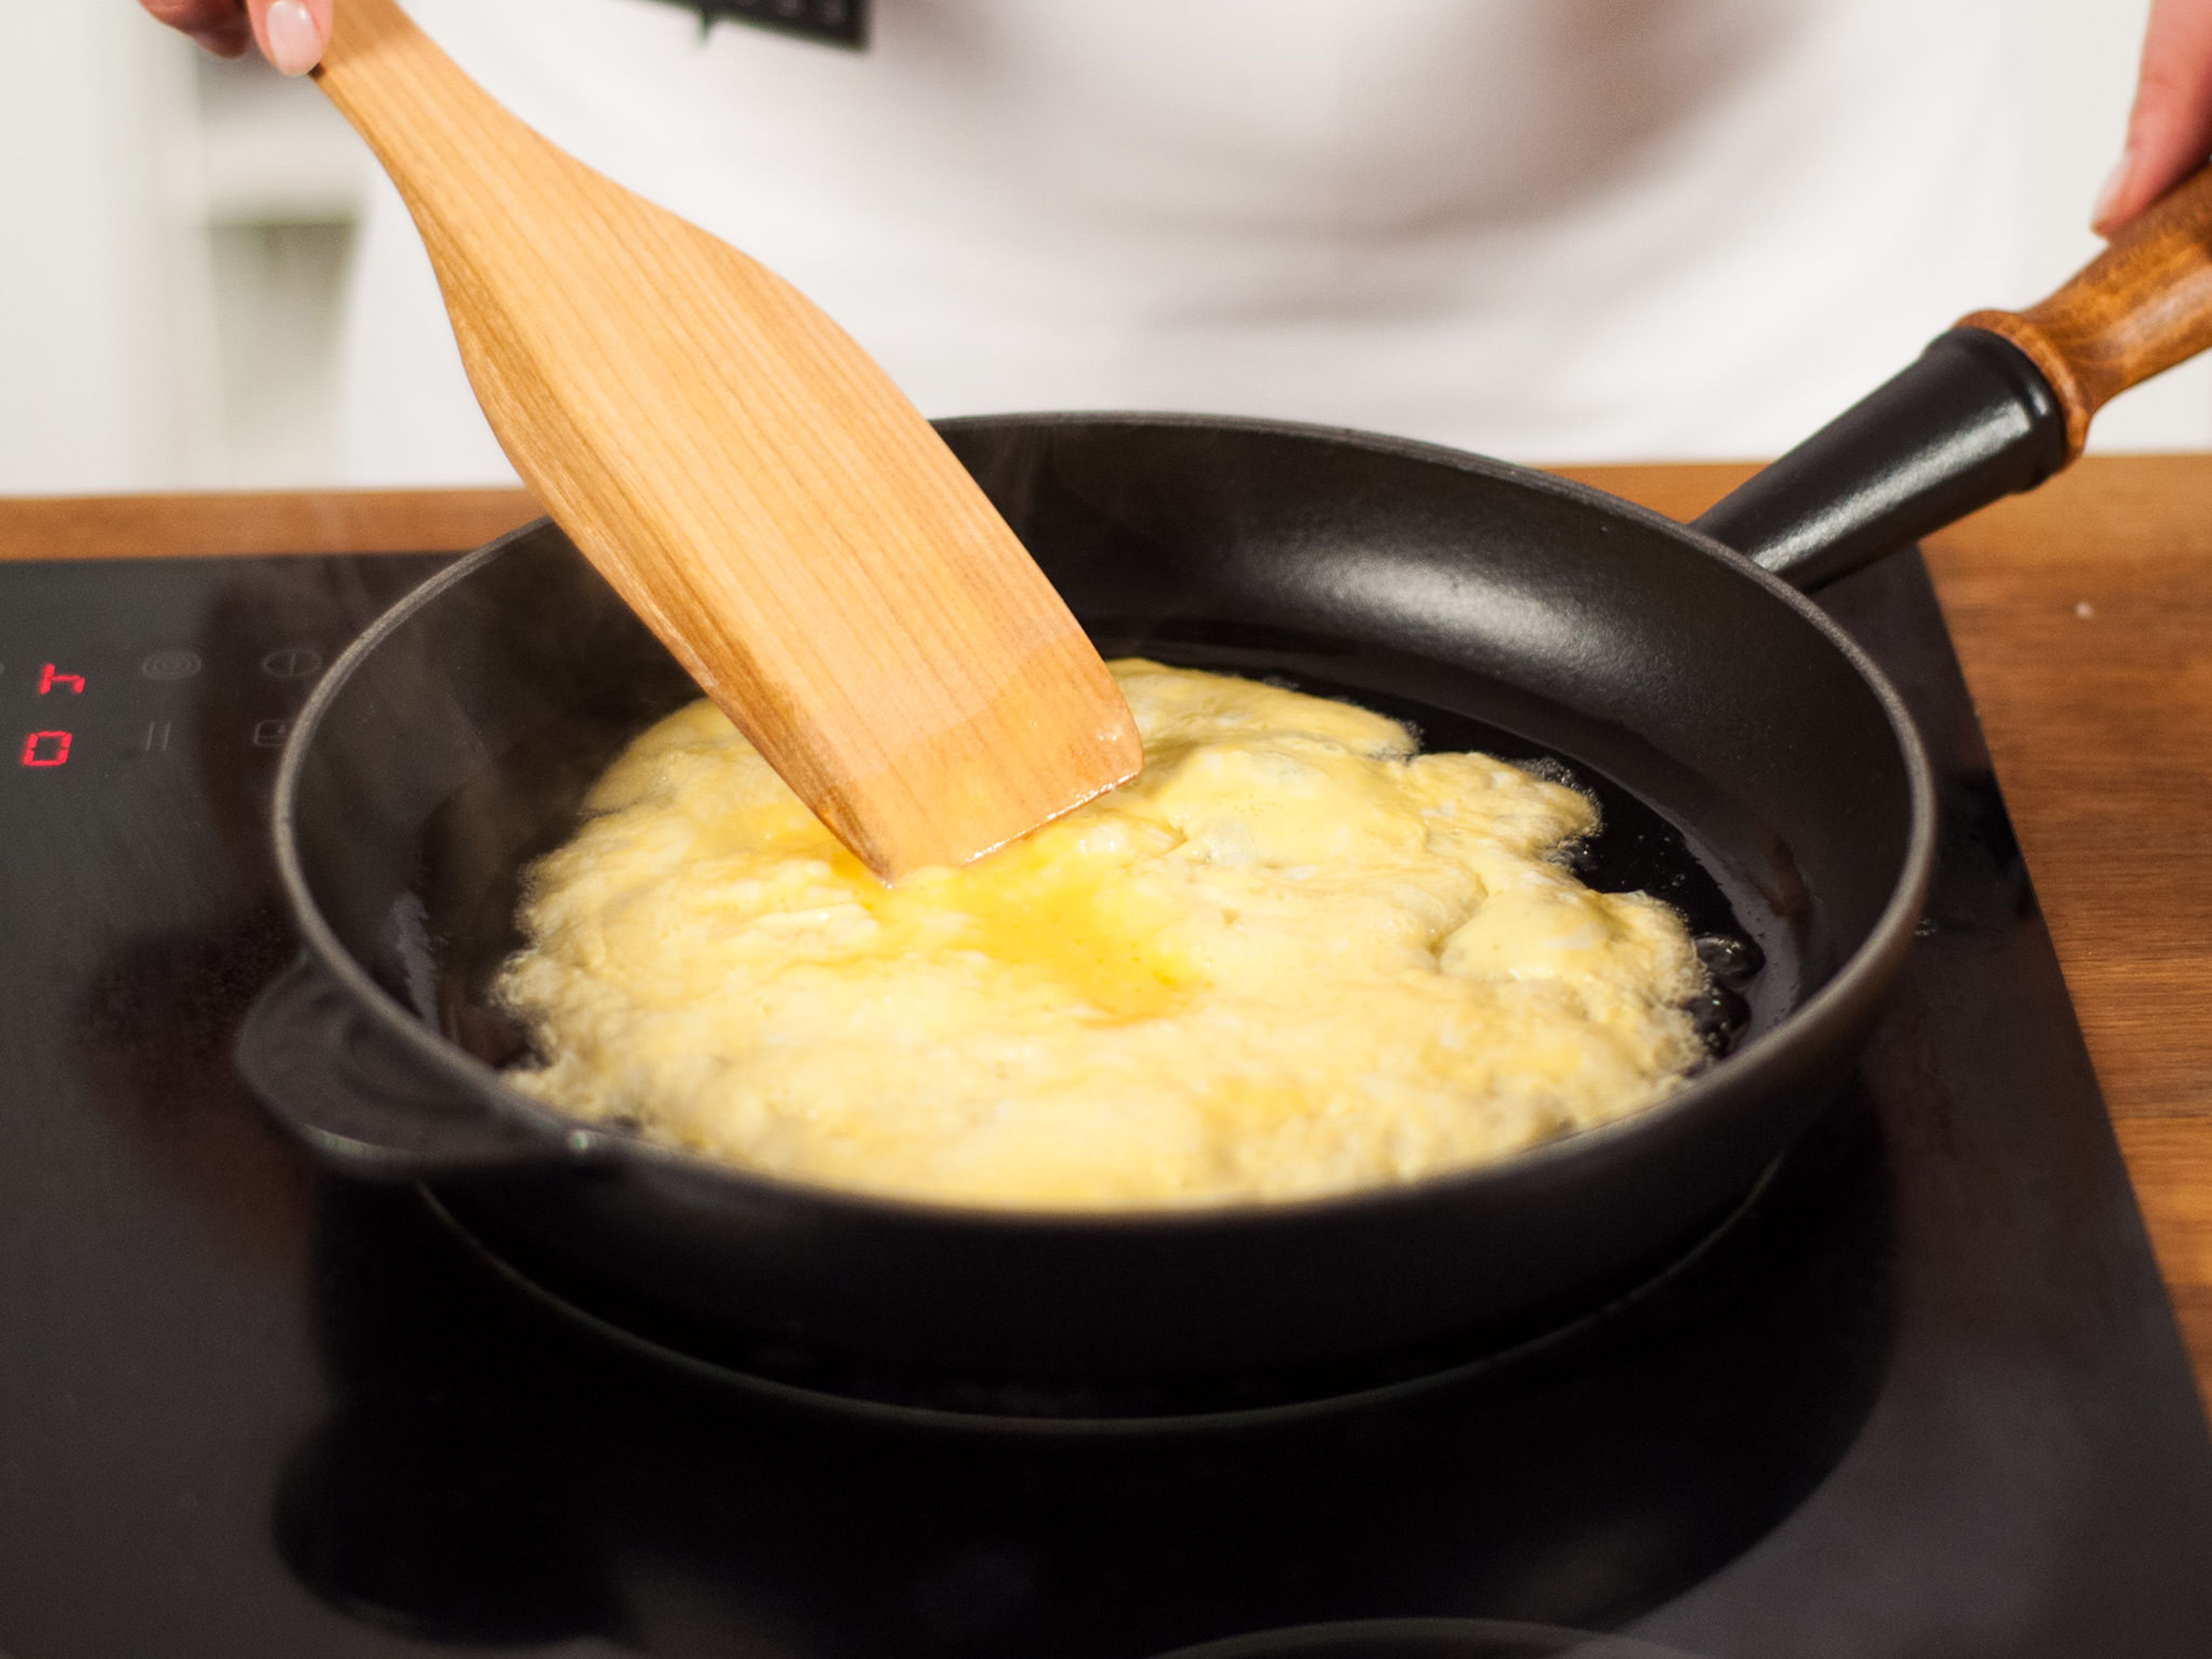 Pflanzenöl auf mittlerer Hitze in einer großen Pfanne erhitzen. Eier hinzugeben und für ca. 1 – 2 Min. von beiden Seiten braten. Zum Abkühlen bei Seite stellen.